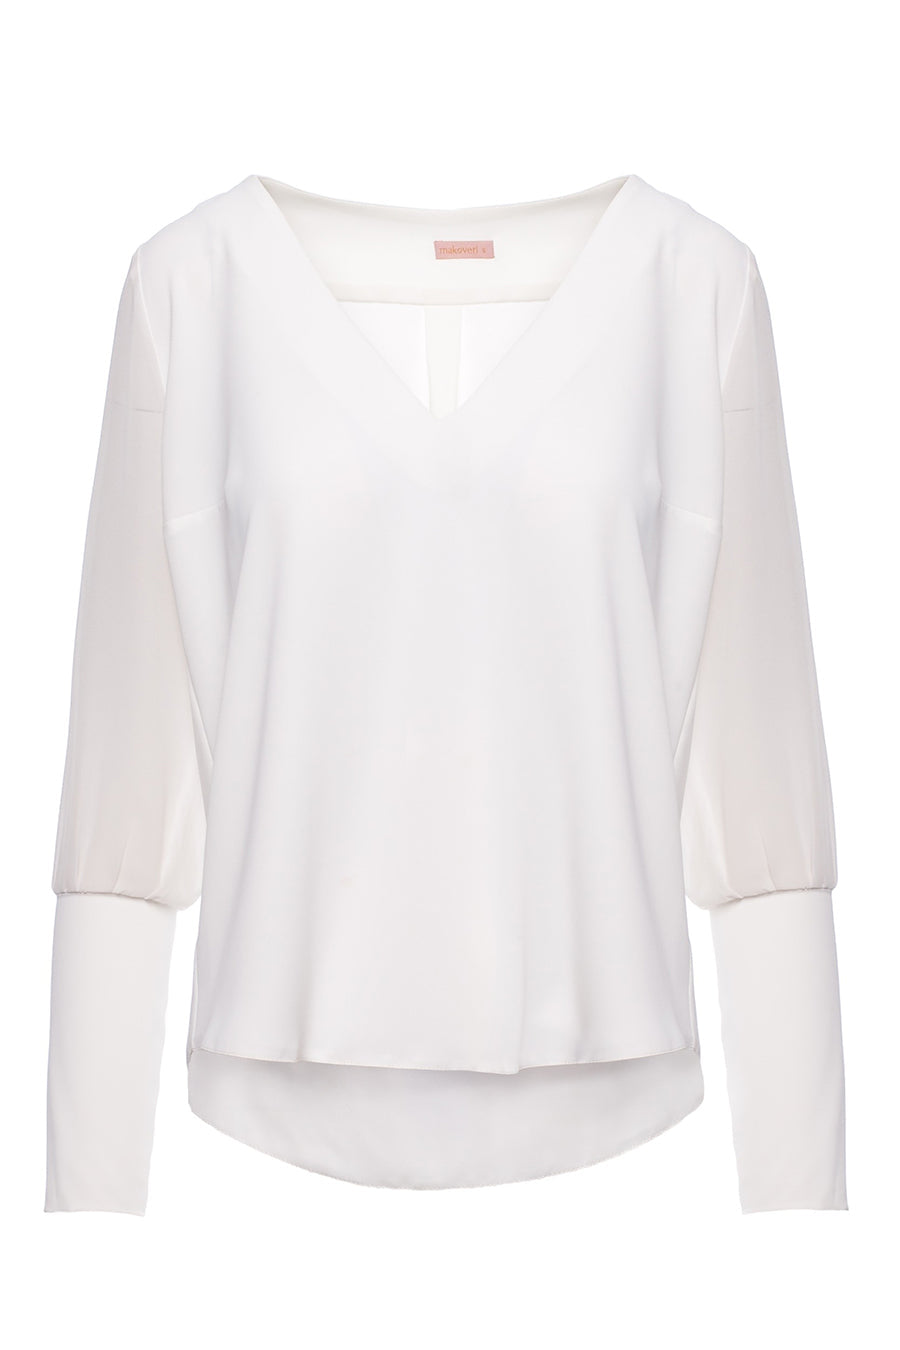 Γυναικεία μπλούζα Dafne, Λευκό 5